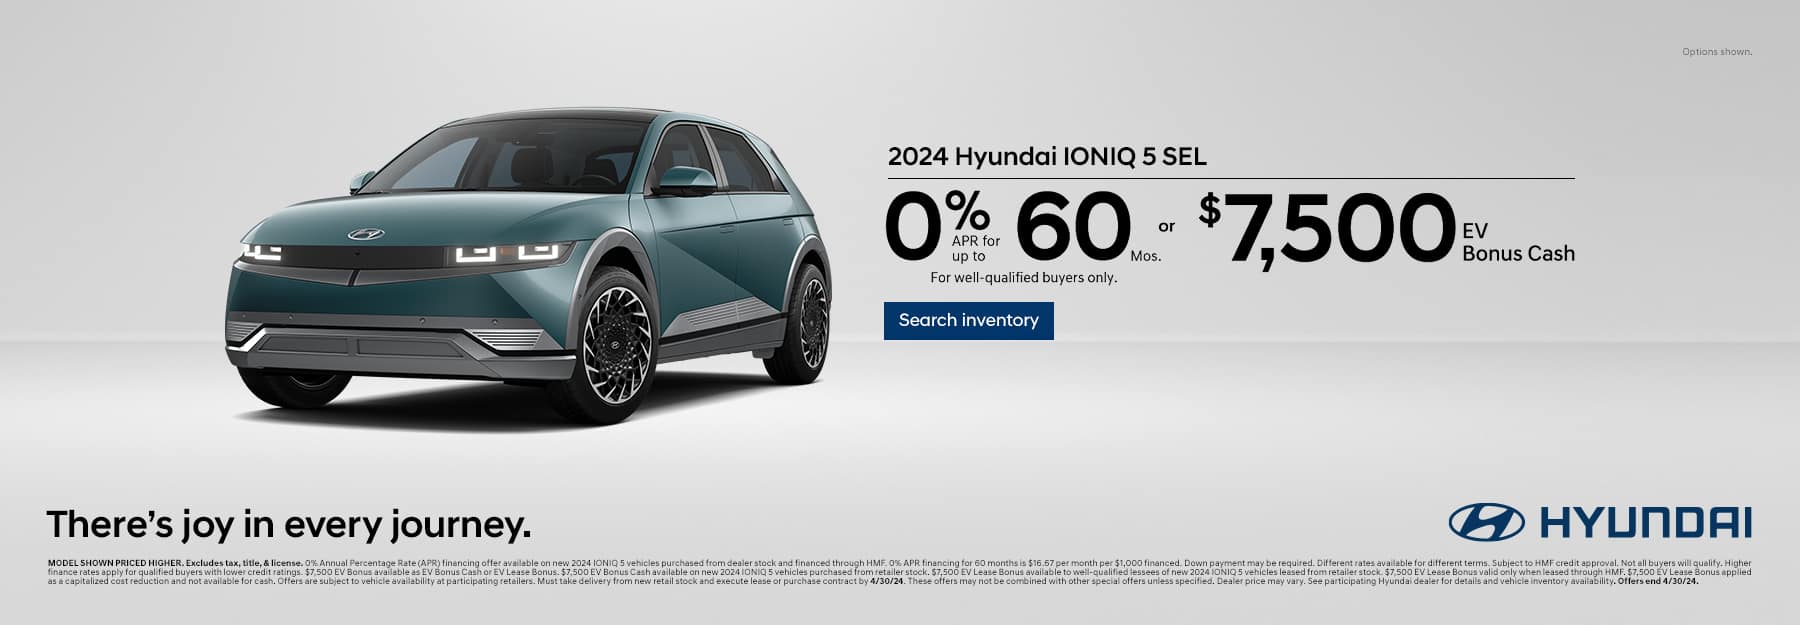 Hyundai IONIQ 5 offer